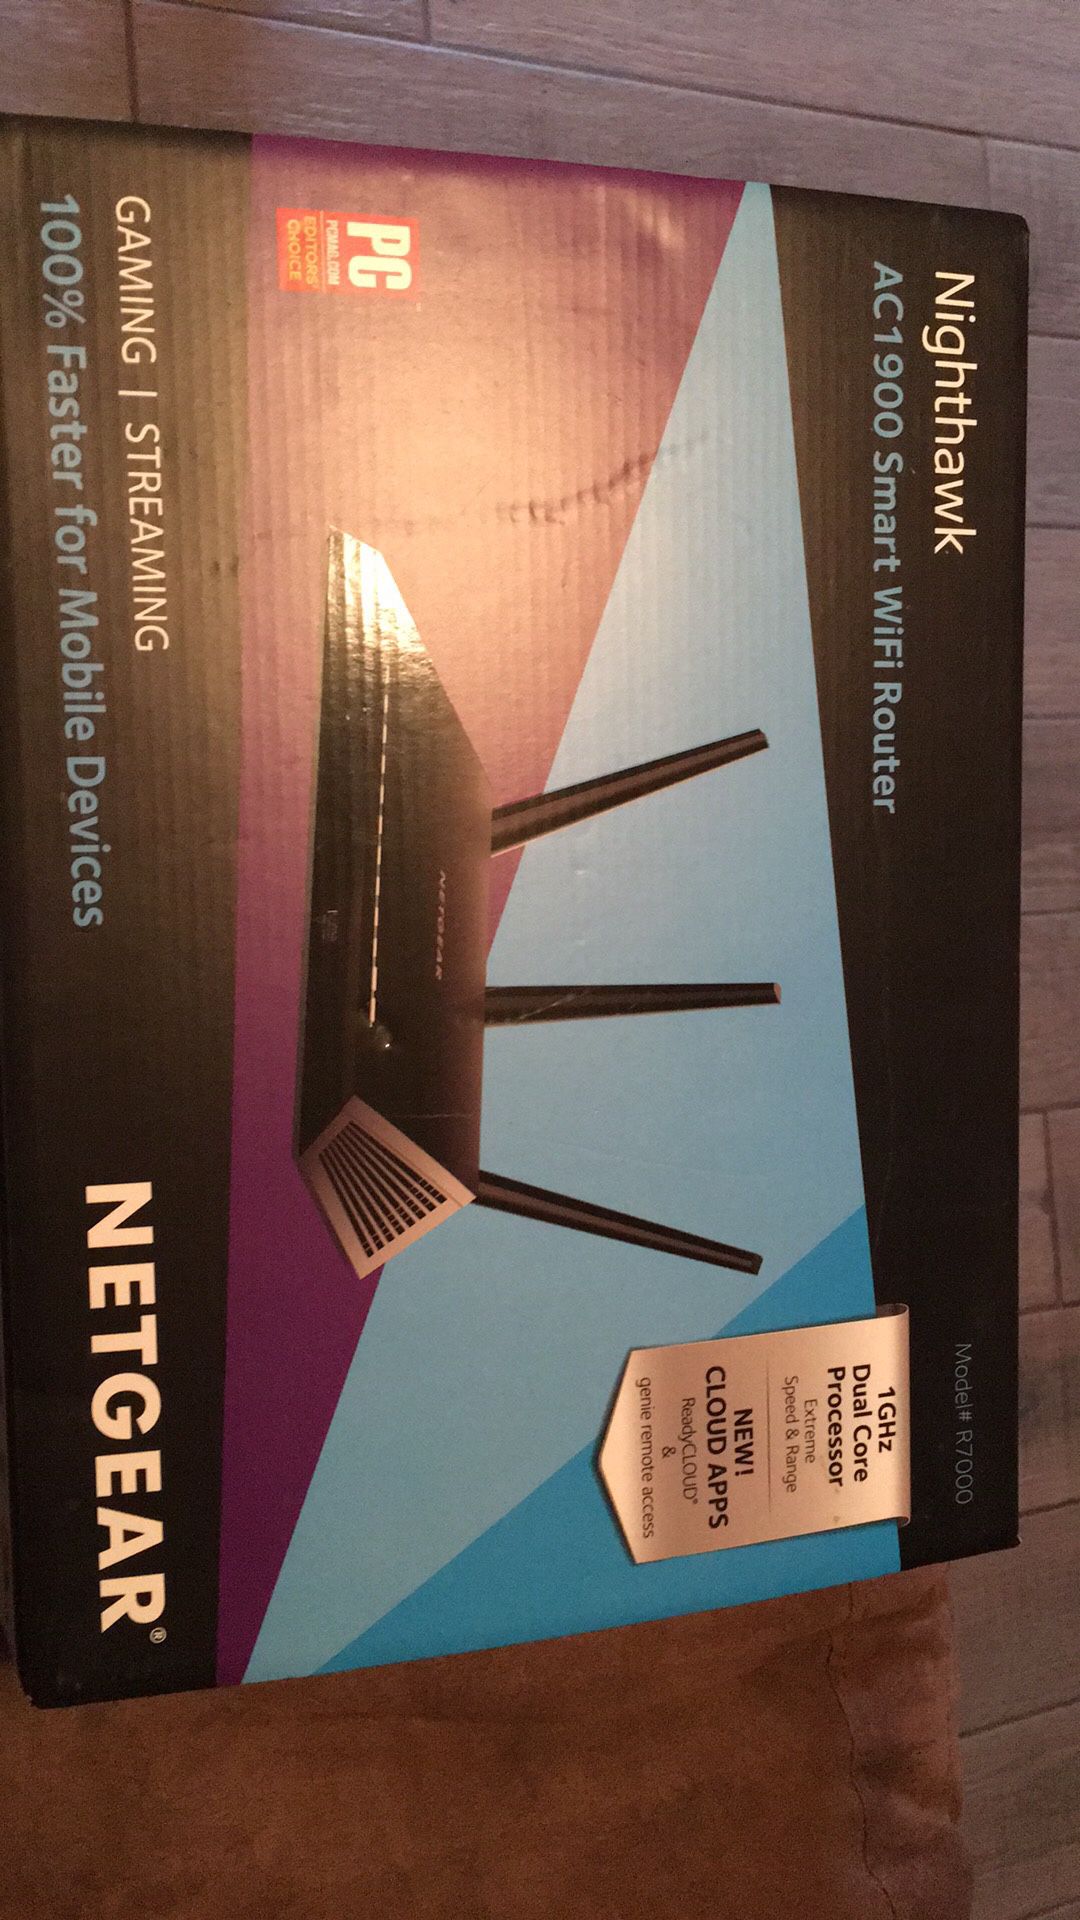 Netgear Nighthawk AC1900 smart WiFi router